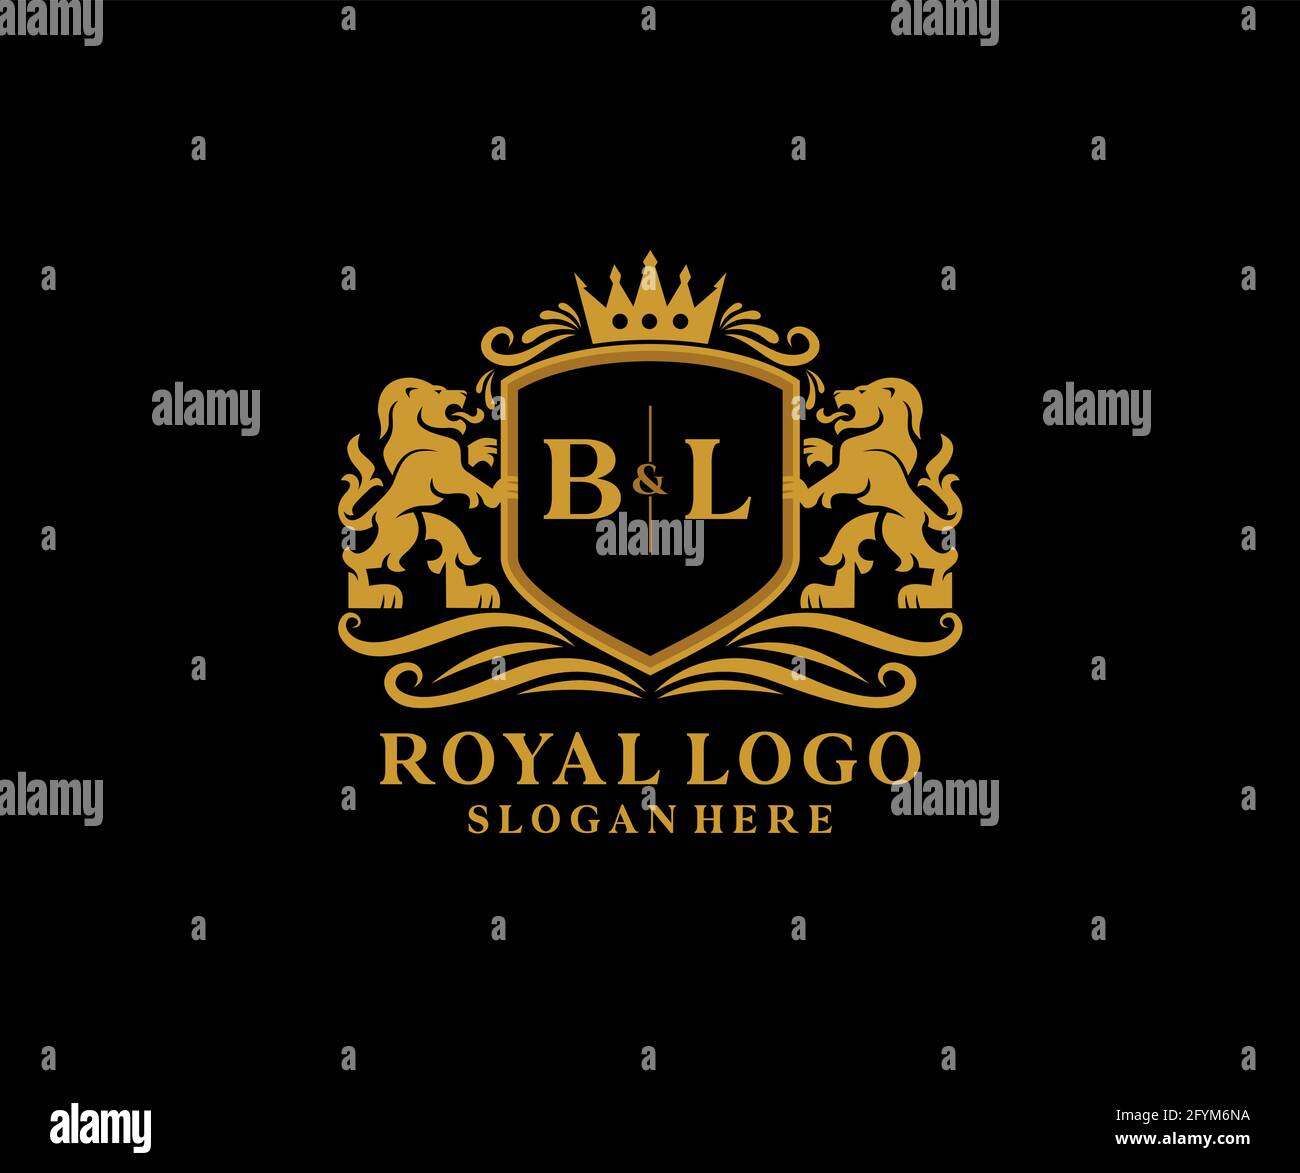 BL Letter Lion Royal Luxury Logo Vorlage in Vektorgrafik für Restaurant, Royalty, Boutique, Cafe, Hotel, Wappentisch, Schmuck, Mode und andere Vektor il Stock Vektor